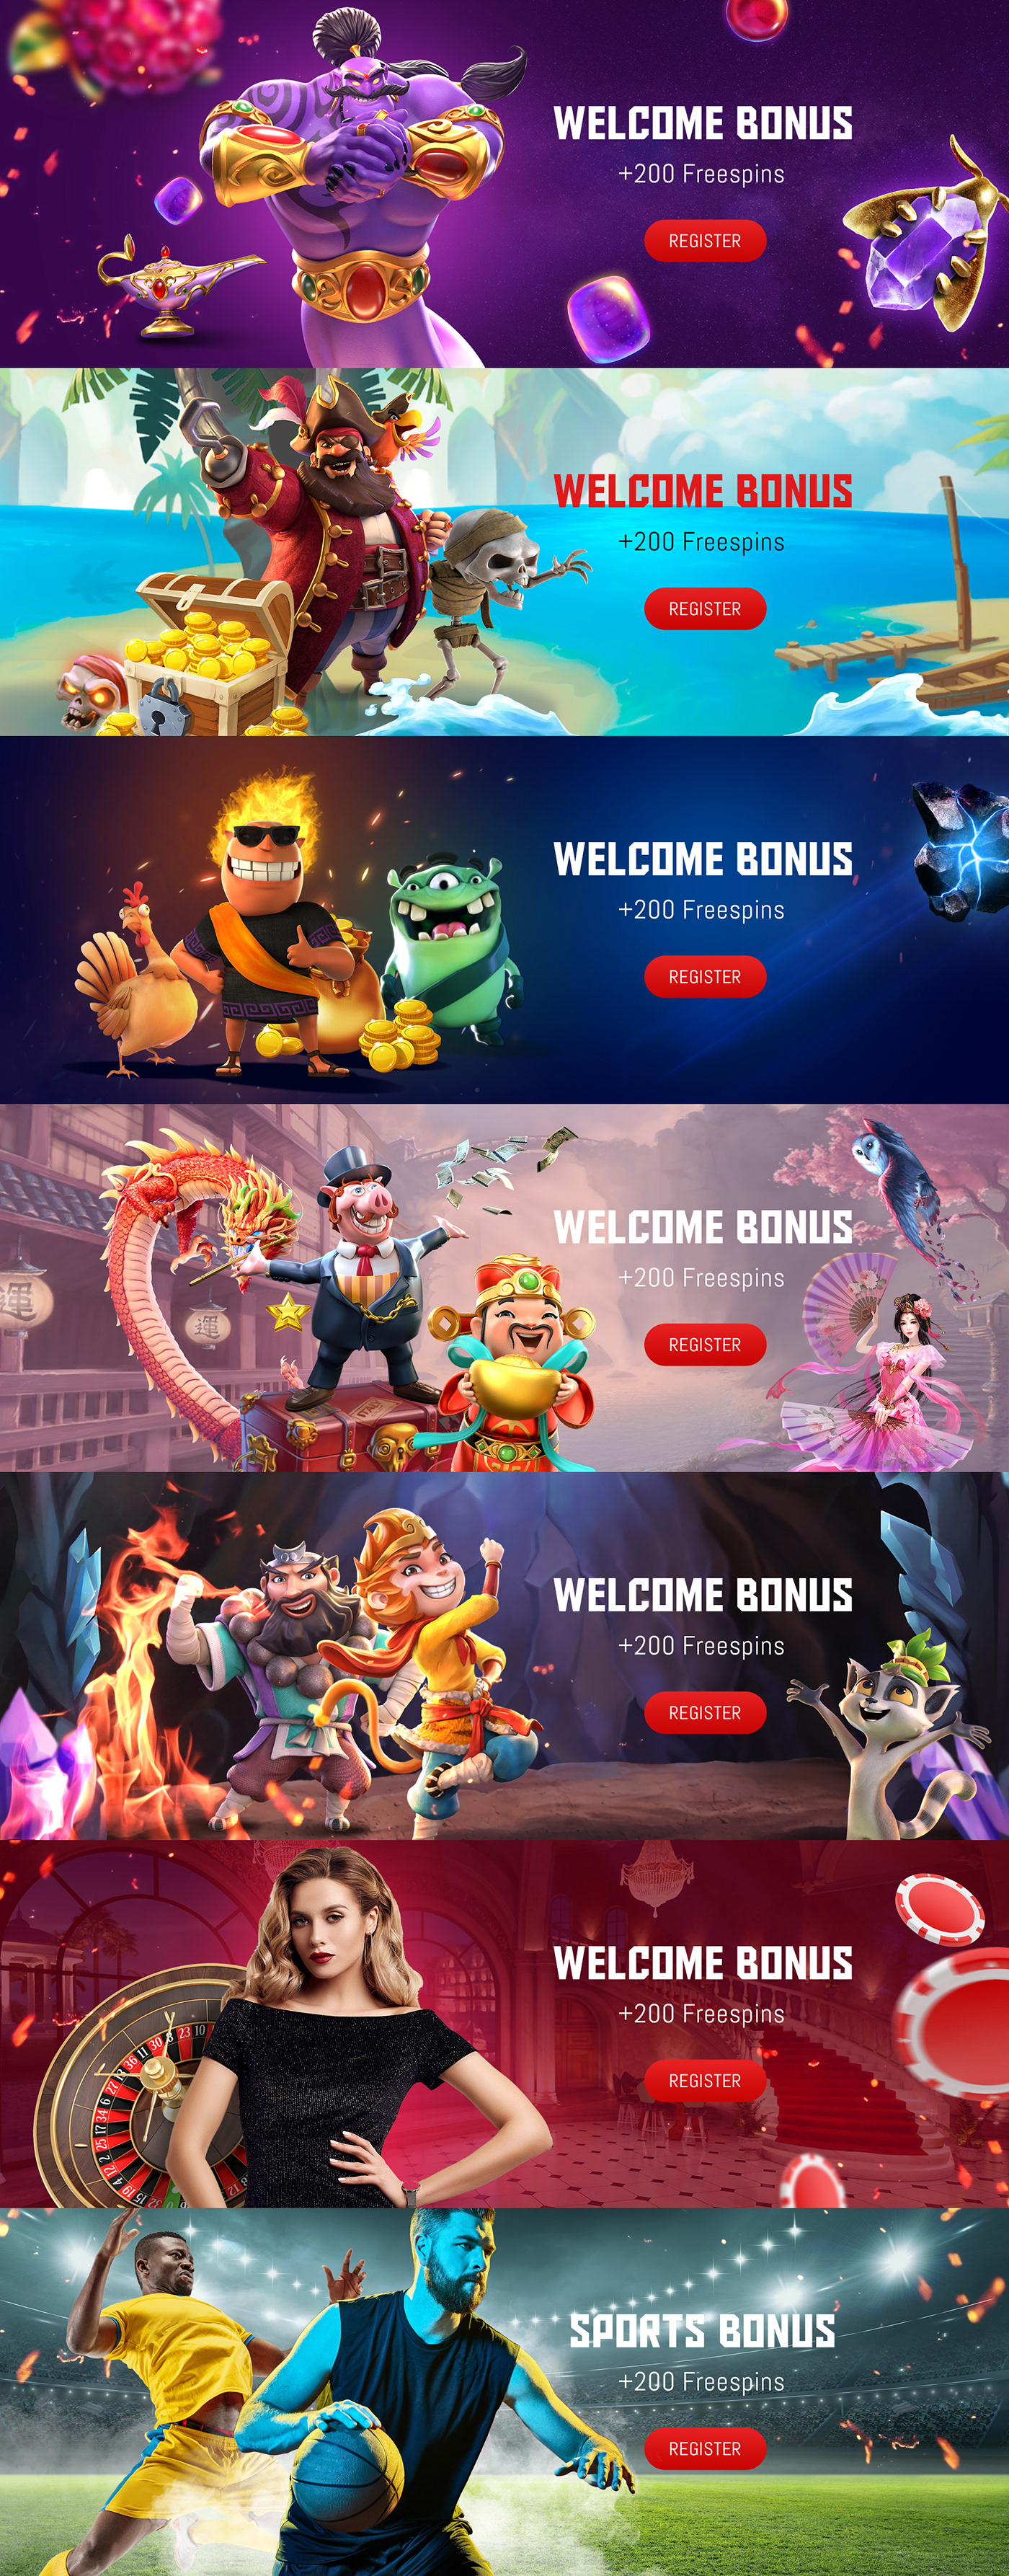 banners casino casino banners gambling online casino Welcome Bonus